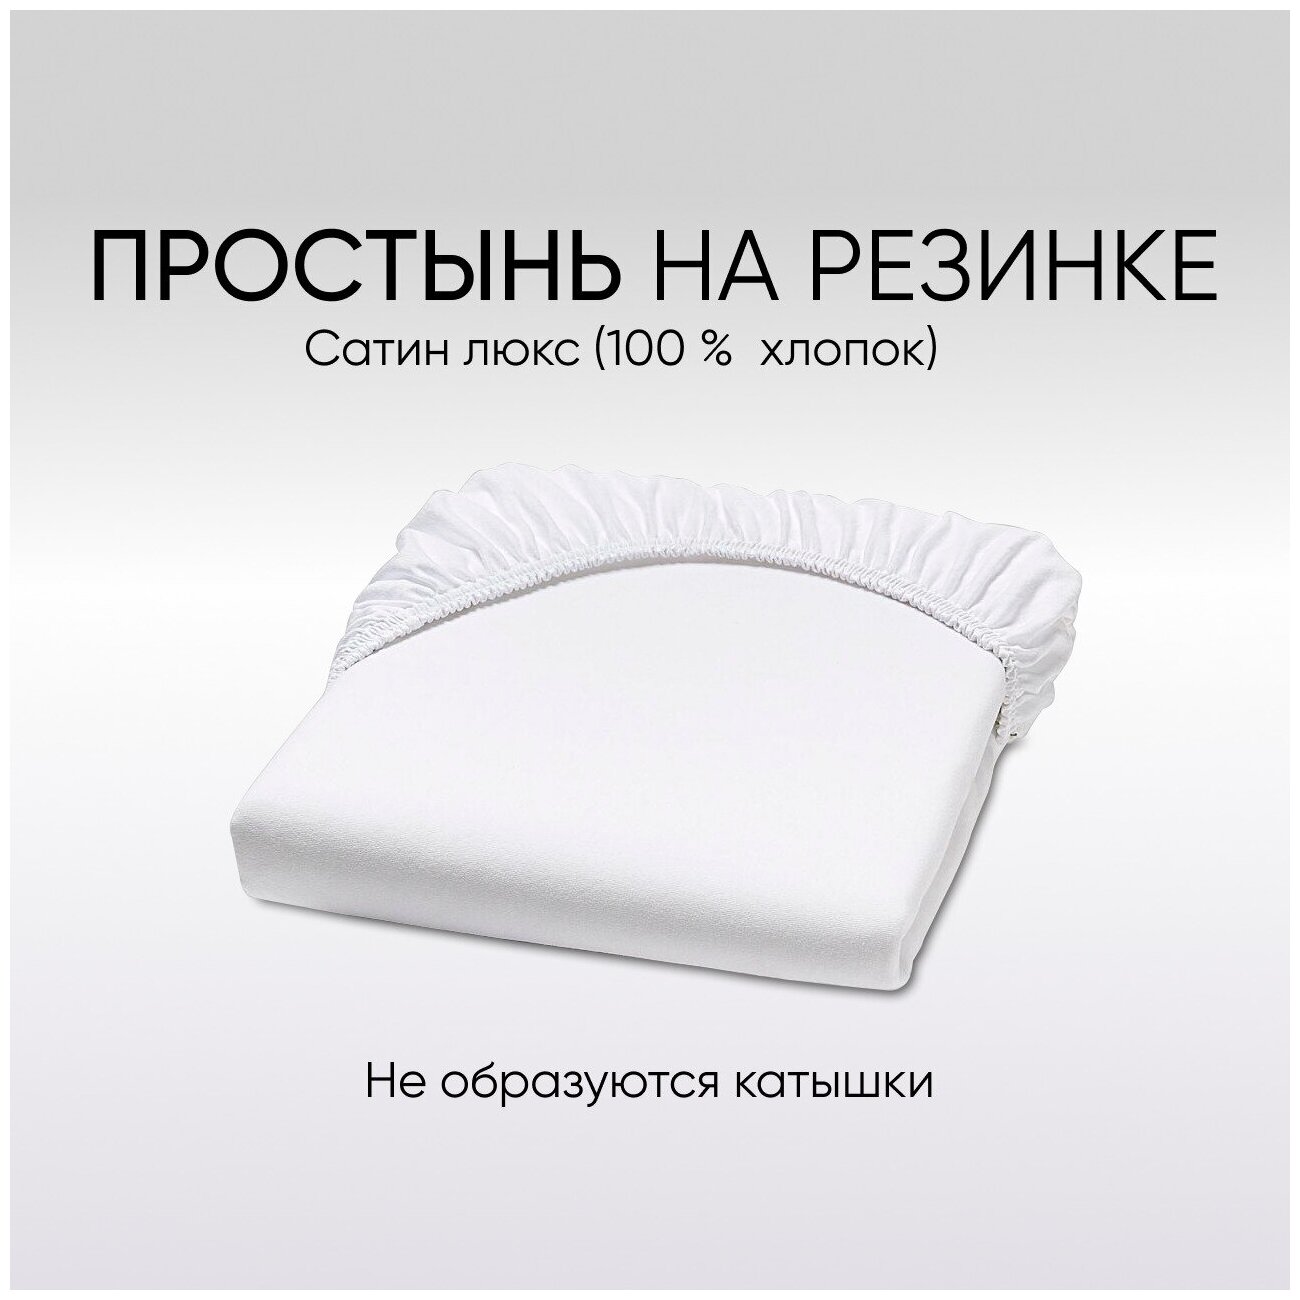 Комплект простыней 2 шт, цвет: белый, для прямоугольной кроватки 140*70 см